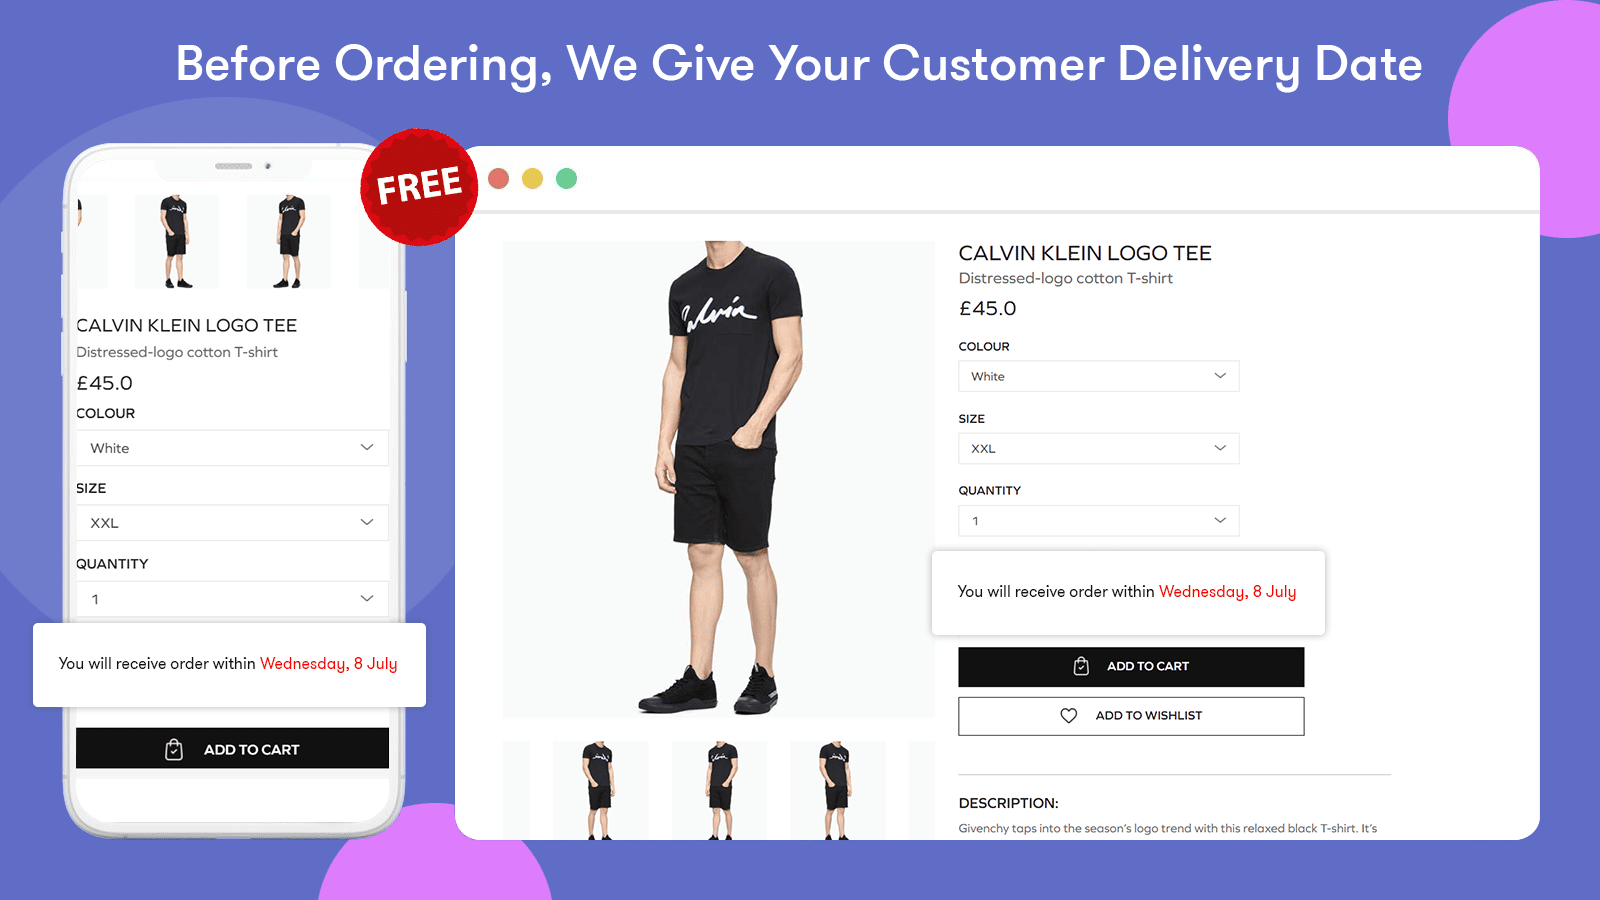 Order Delivery Estimation